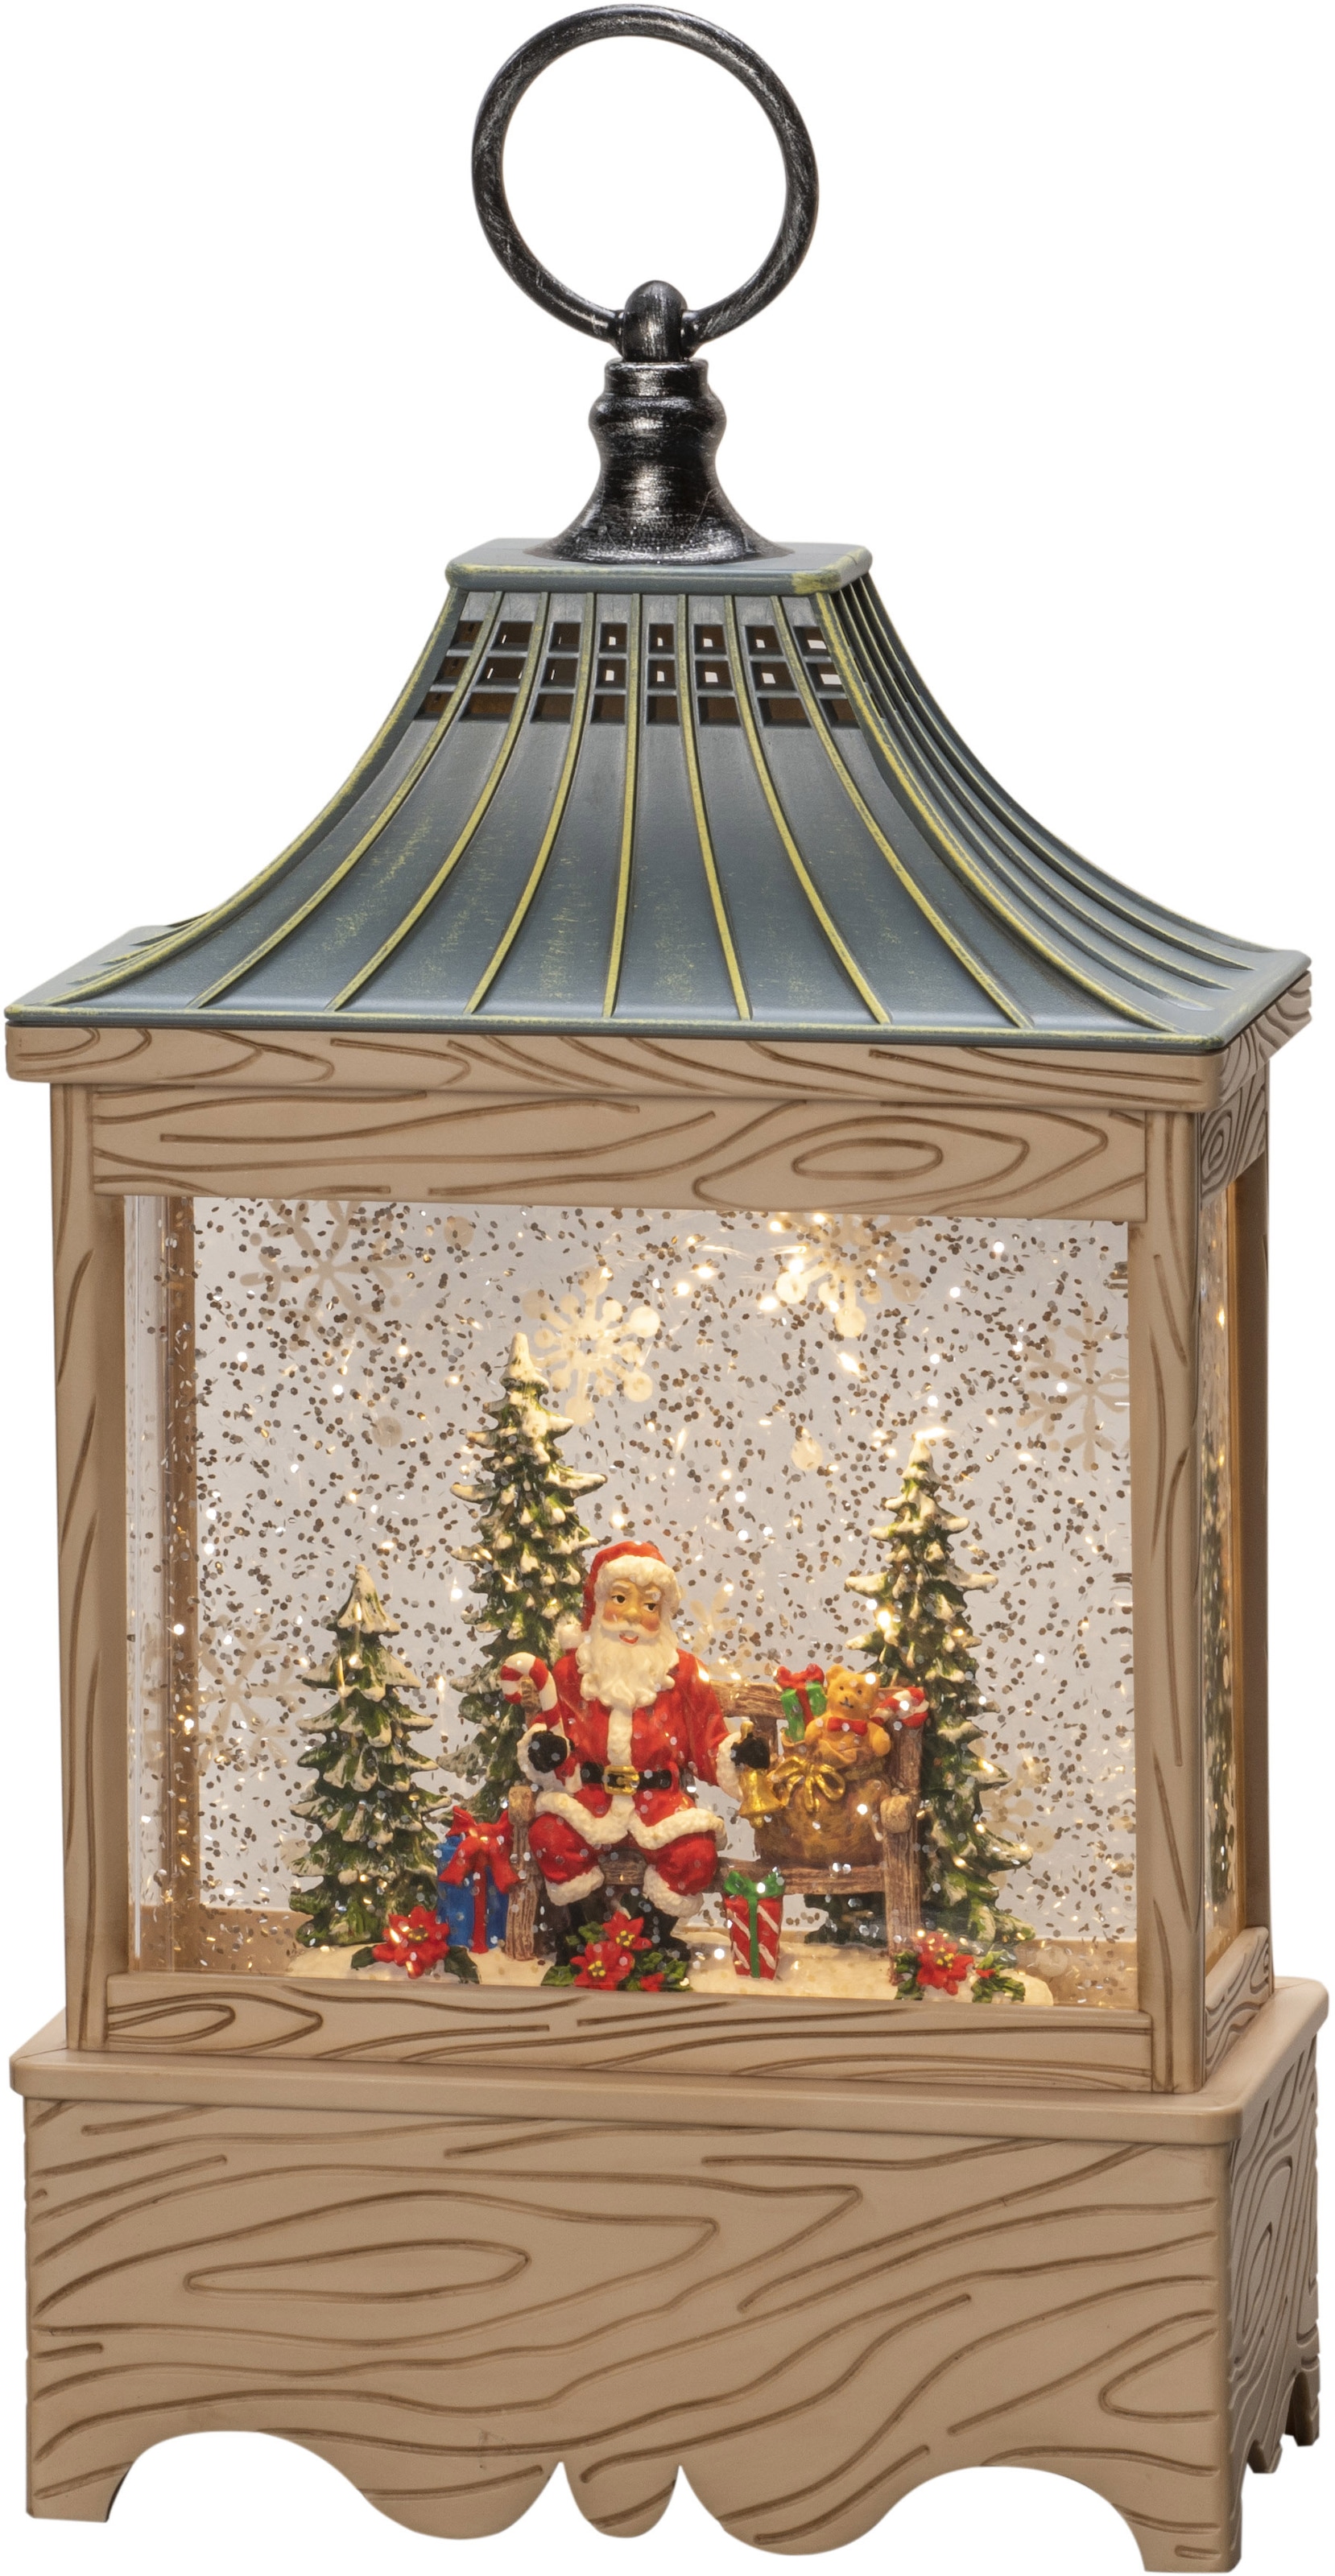 KONSTSMIDE LED Laterne "Wasserlaterne Santa und Baum, Weihnachtsdeko", naturfarben, wassergefüllt, 5h Timer, 1 warm weiß